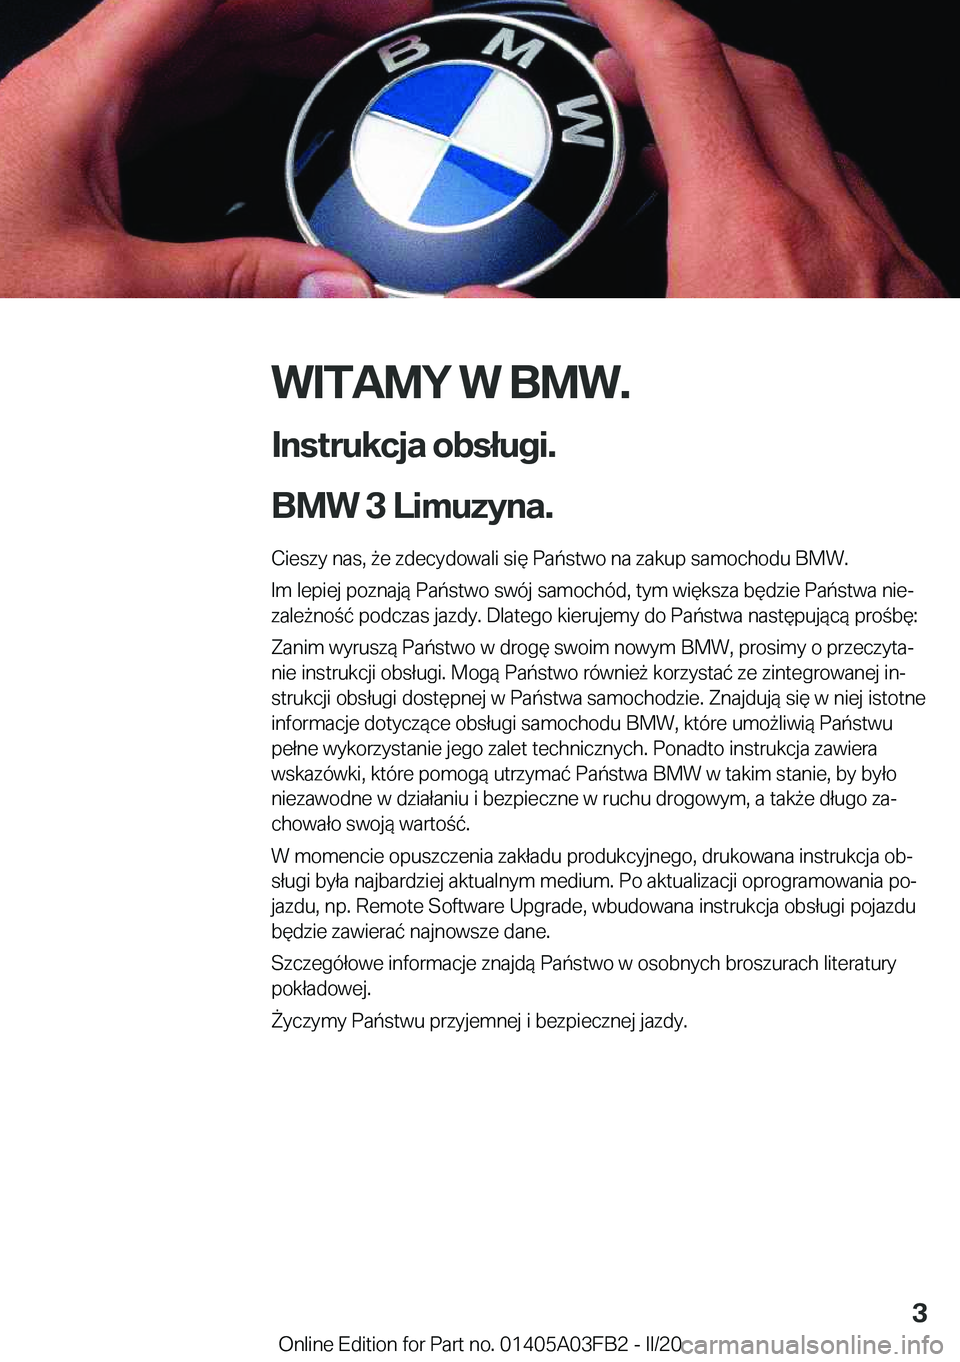 BMW 3 SERIES 2020  Instrukcja obsługi (in Polish) �W�I�T�A�M�Y��W��B�M�W�.
�I�n�s�t�r�u�k�c�j�a��o�b�s�ł�u�g�i�.
�B�M�W��3��L�i�m�u�z�y�n�a�. �C�i�e�s�z�y��n�a�s�,�9�e��z�d�e�c�y�d�o�w�a�l�i��s�i�